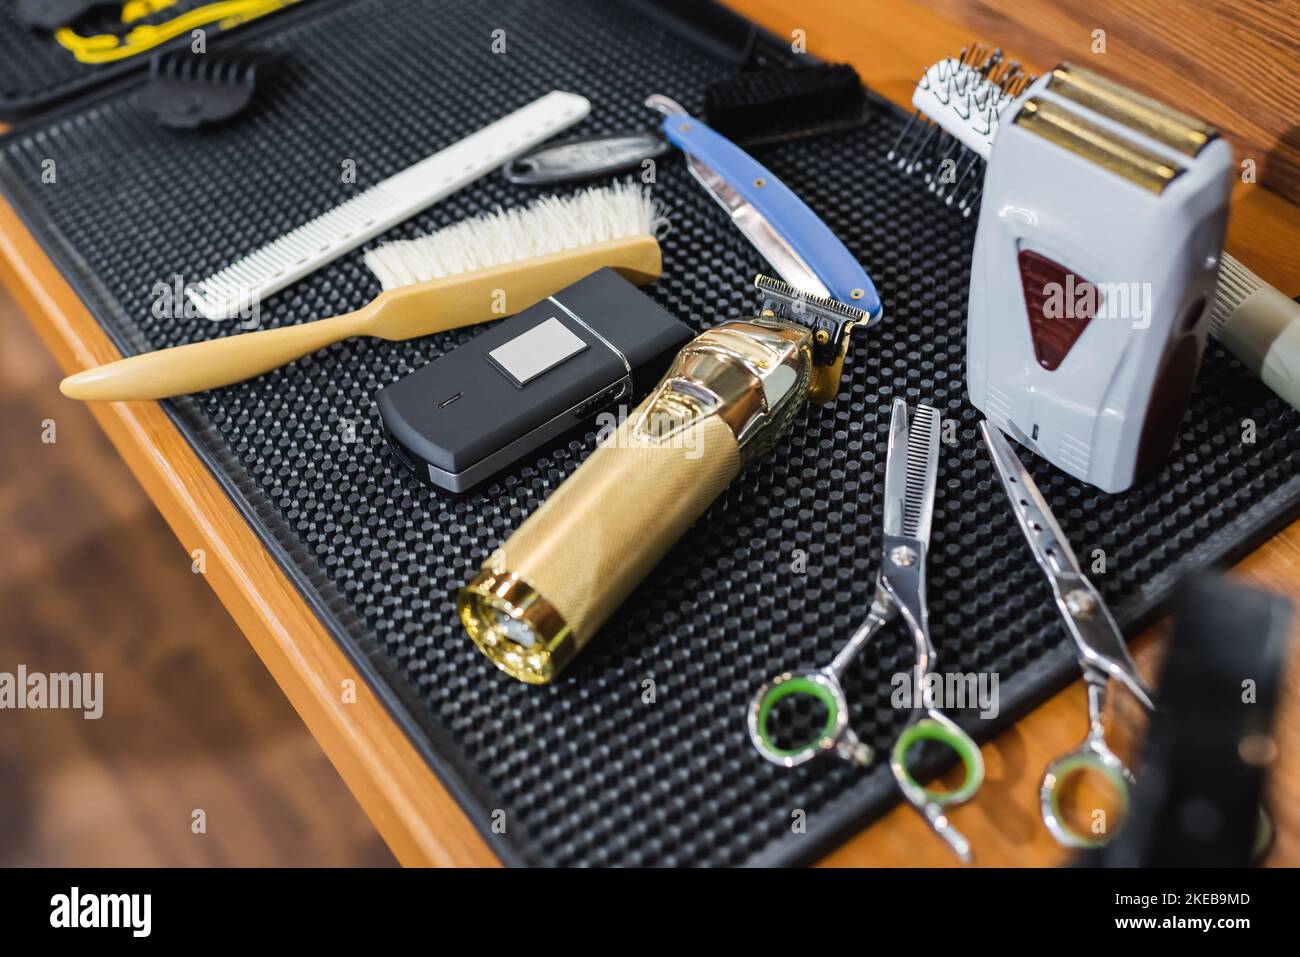 Elektrische Rasiermesser und Haarschneider in der Nähe von Friseurgeräten im Schönheitssalon, Stockbild Stockfoto